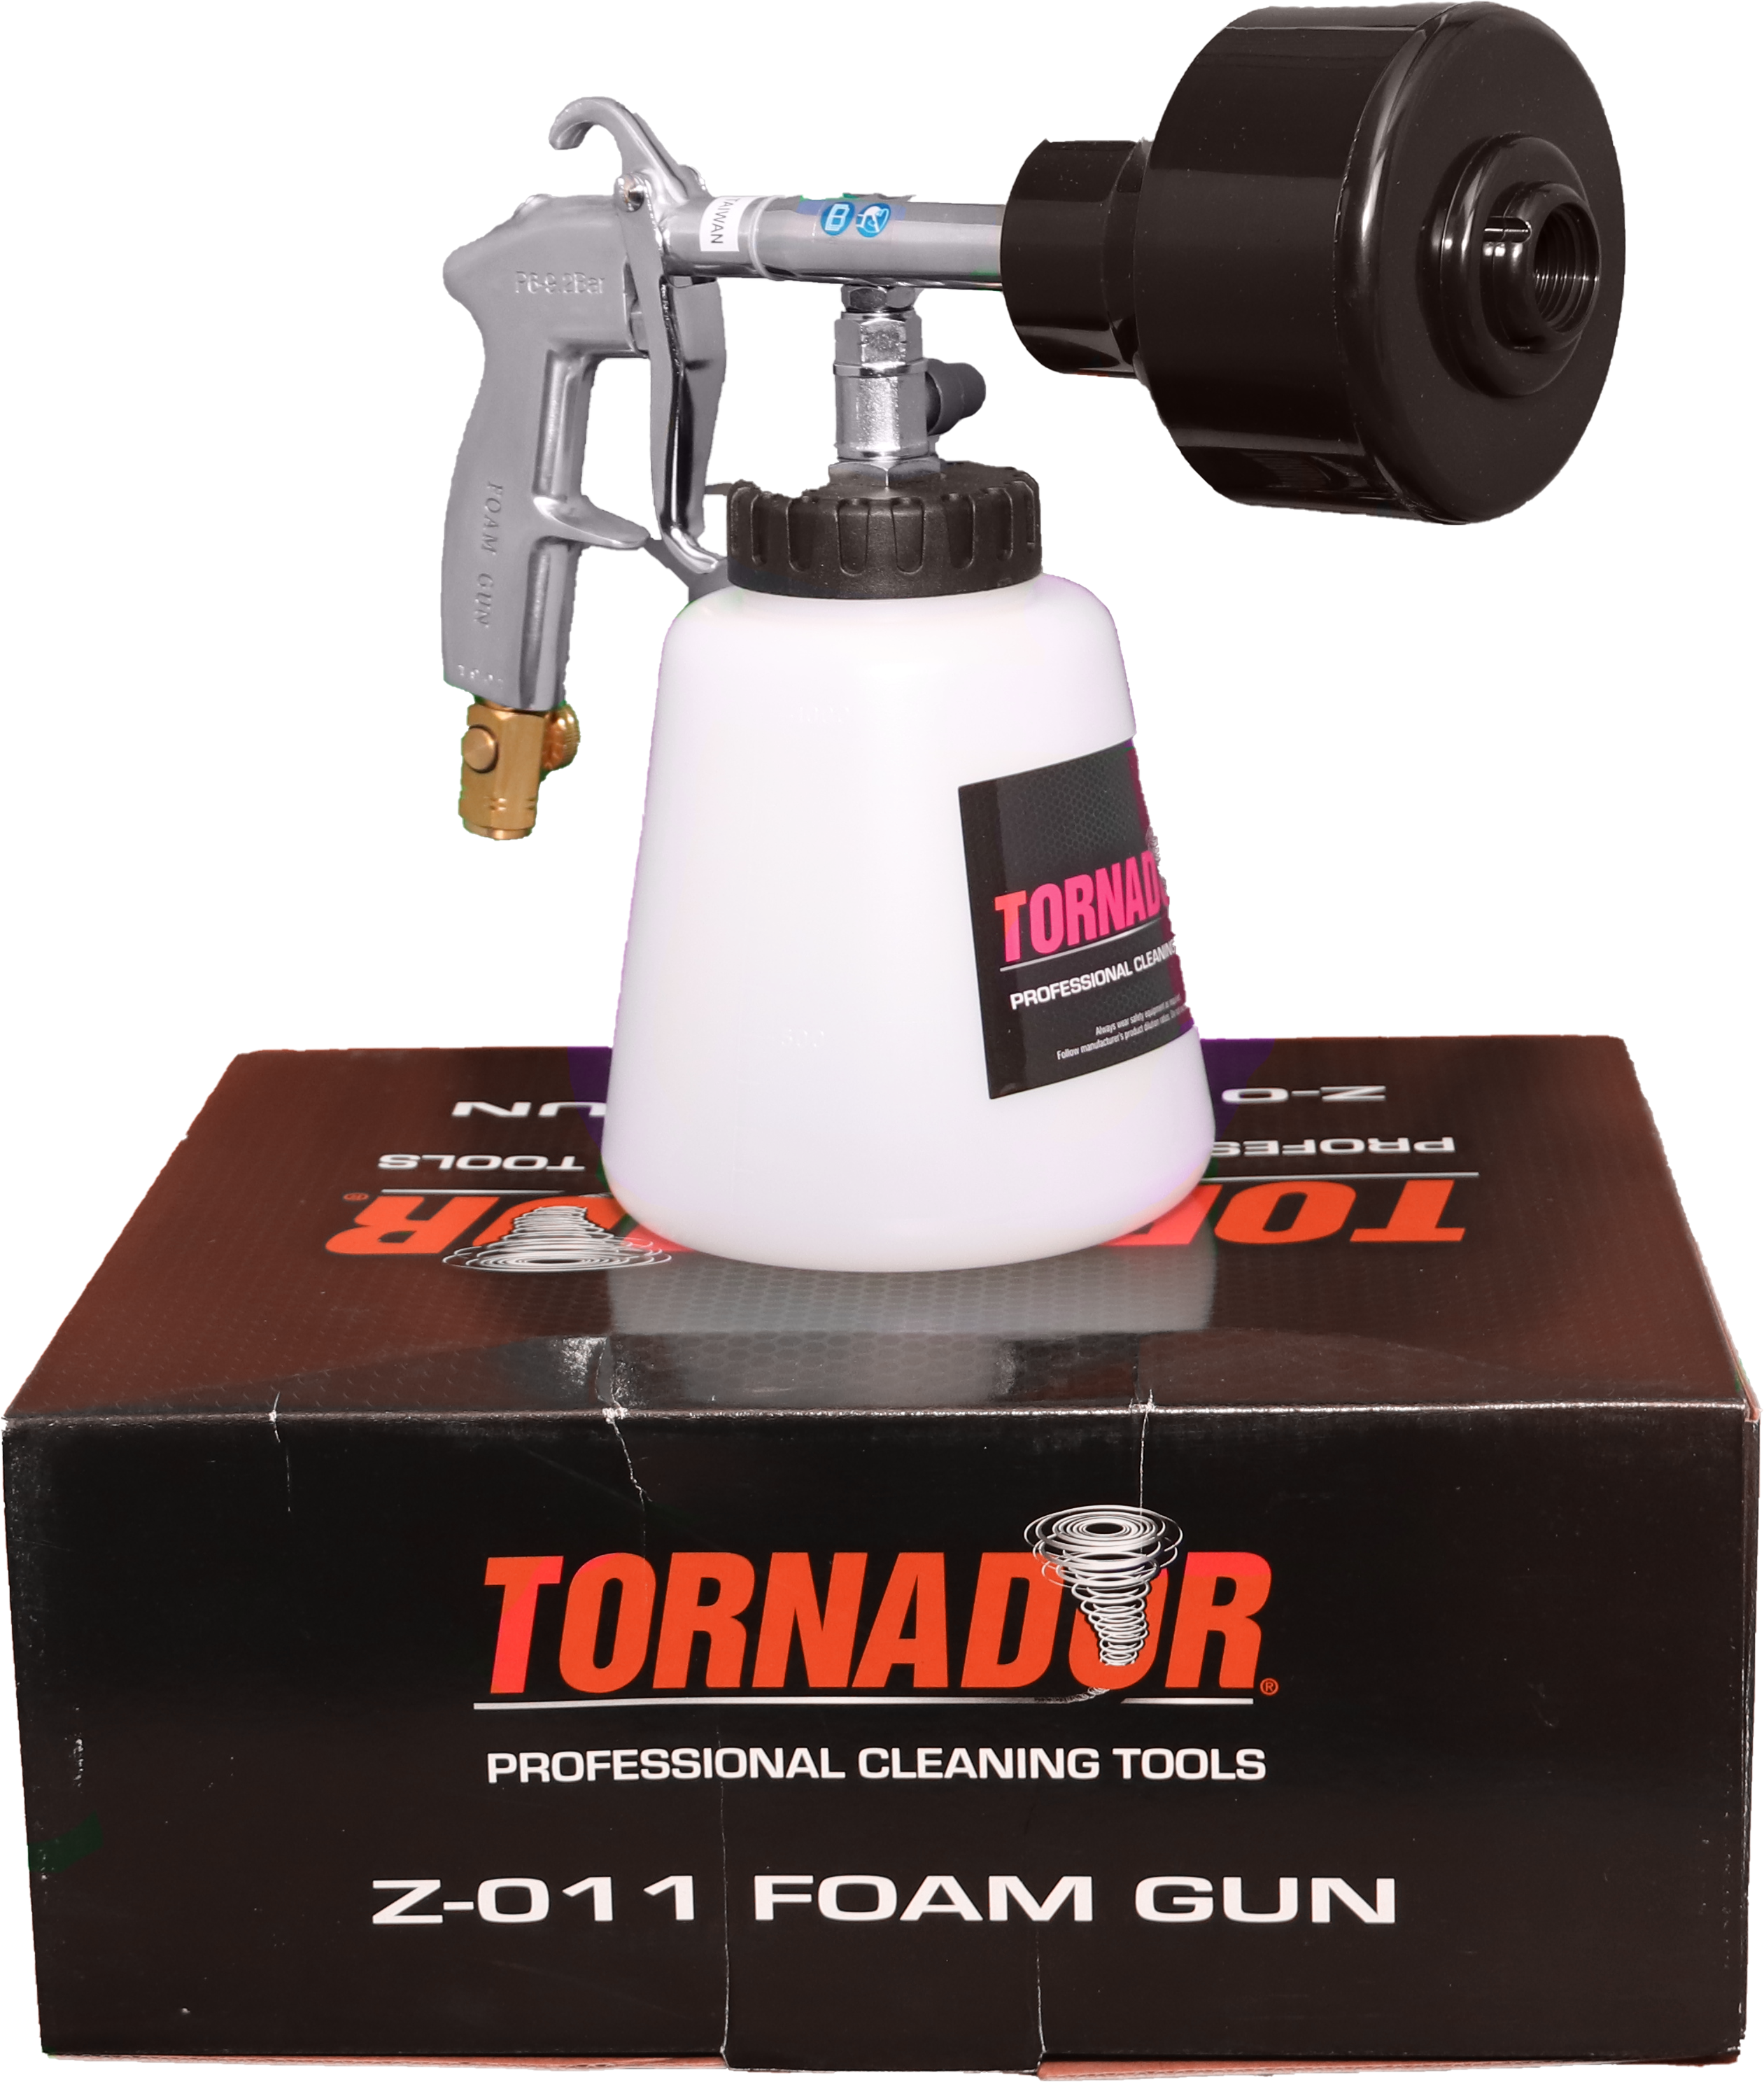 Using the TORNADOR Z-011 Foam Gun 